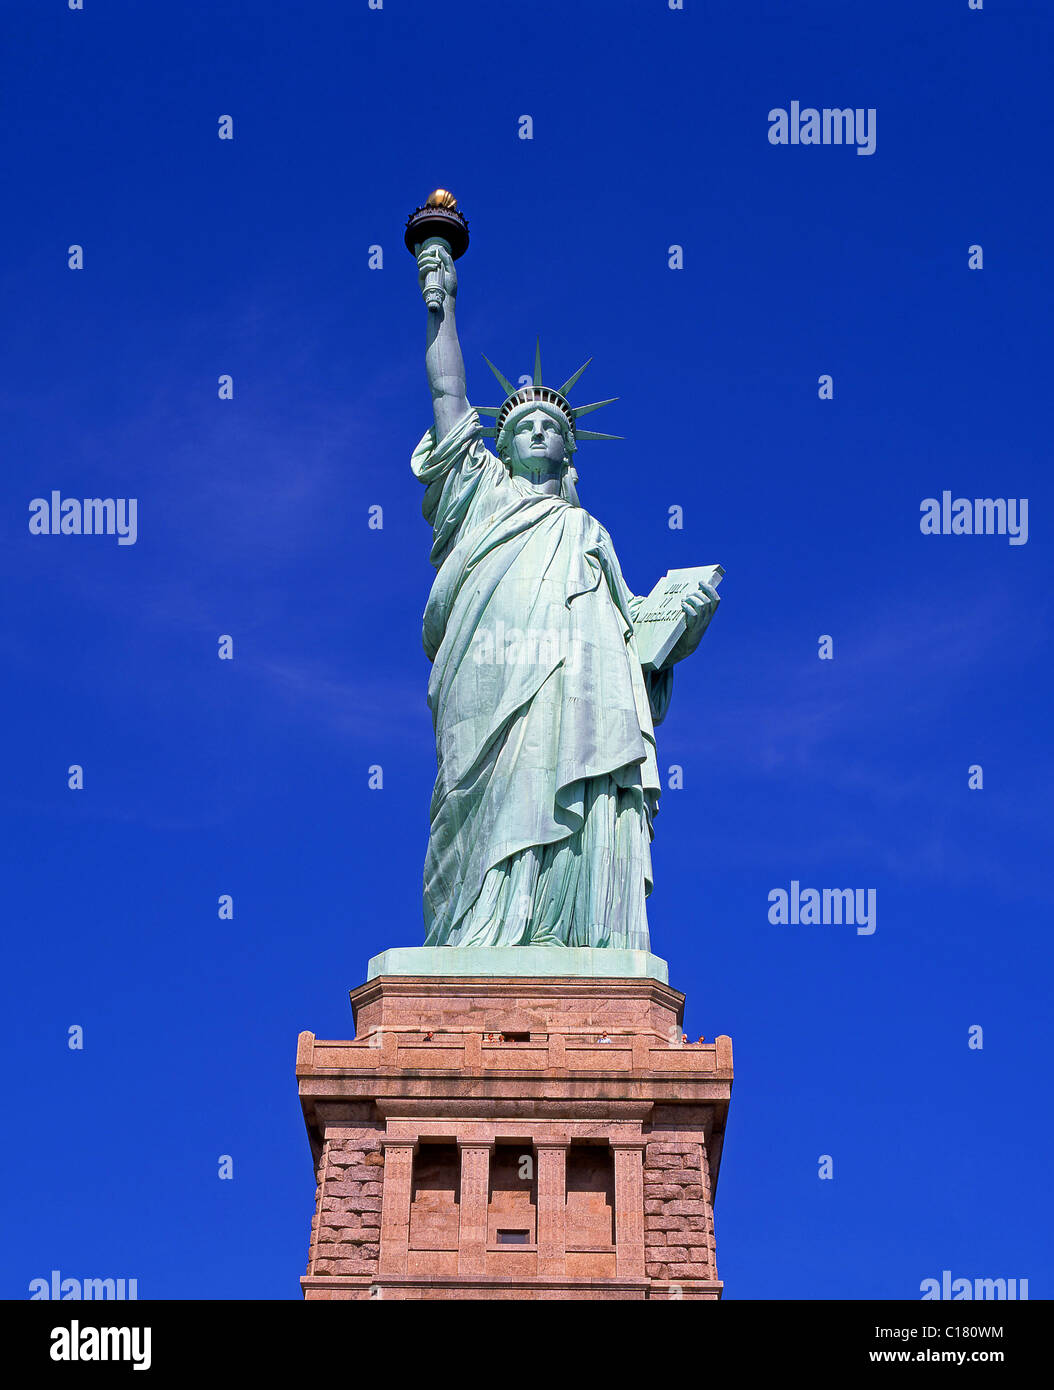 El Monumento Nacional de la estatua de la libertad, la isla de La Libertad, en Nueva York, Estado de Nueva York, Estados Unidos de América Foto de stock